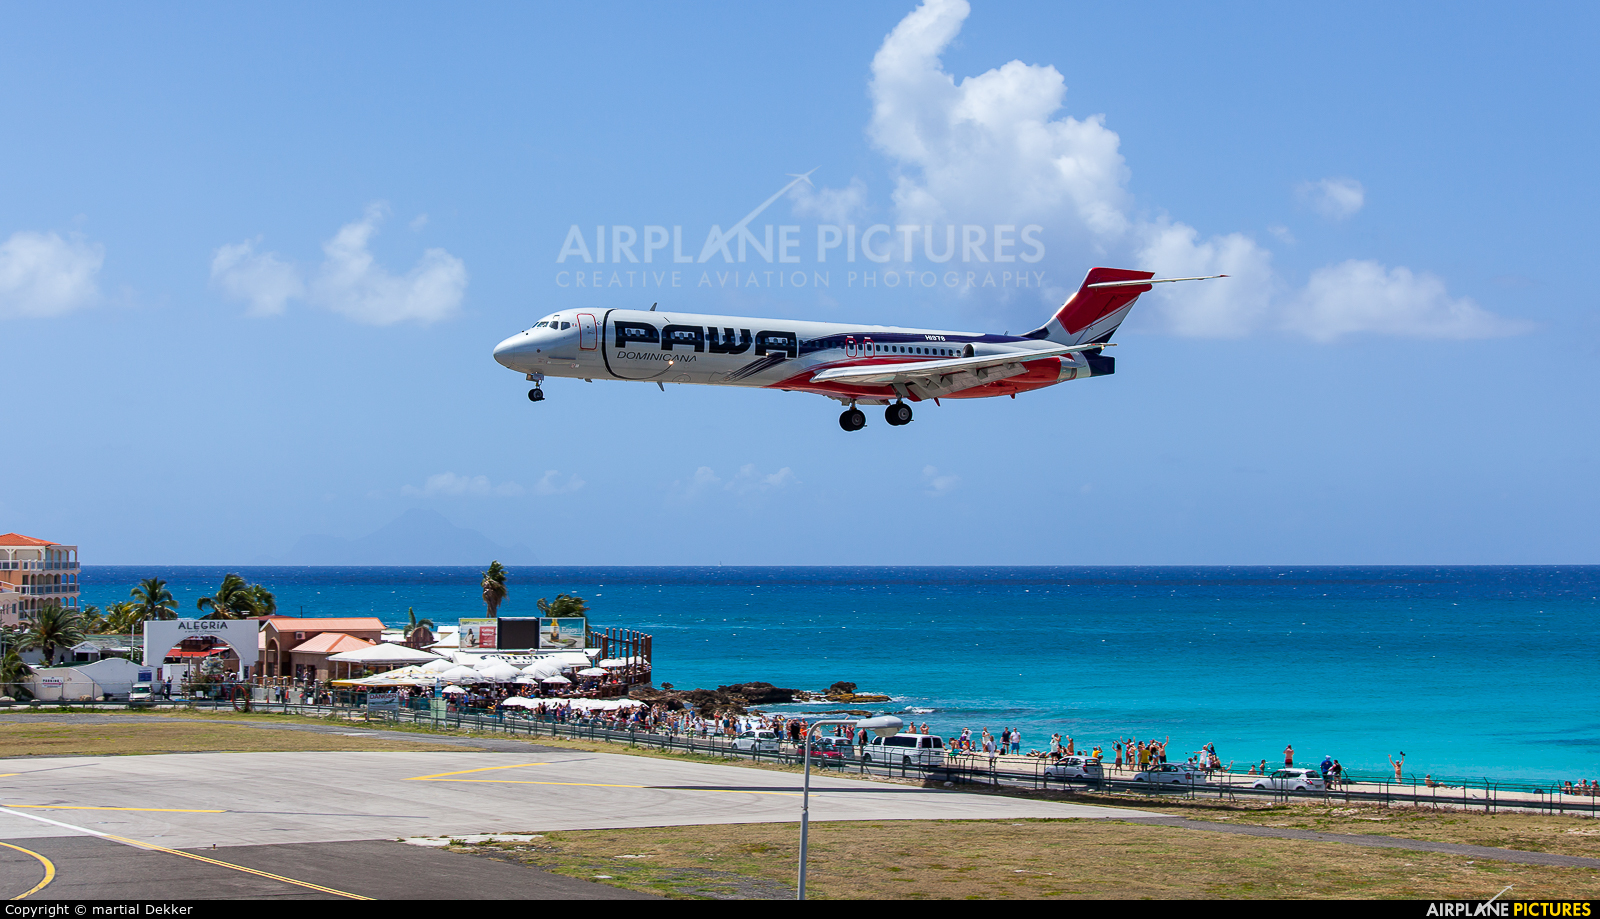 PAWA Dominicana HI978 aircraft at Sint Maarten - Princess Juliana Intl